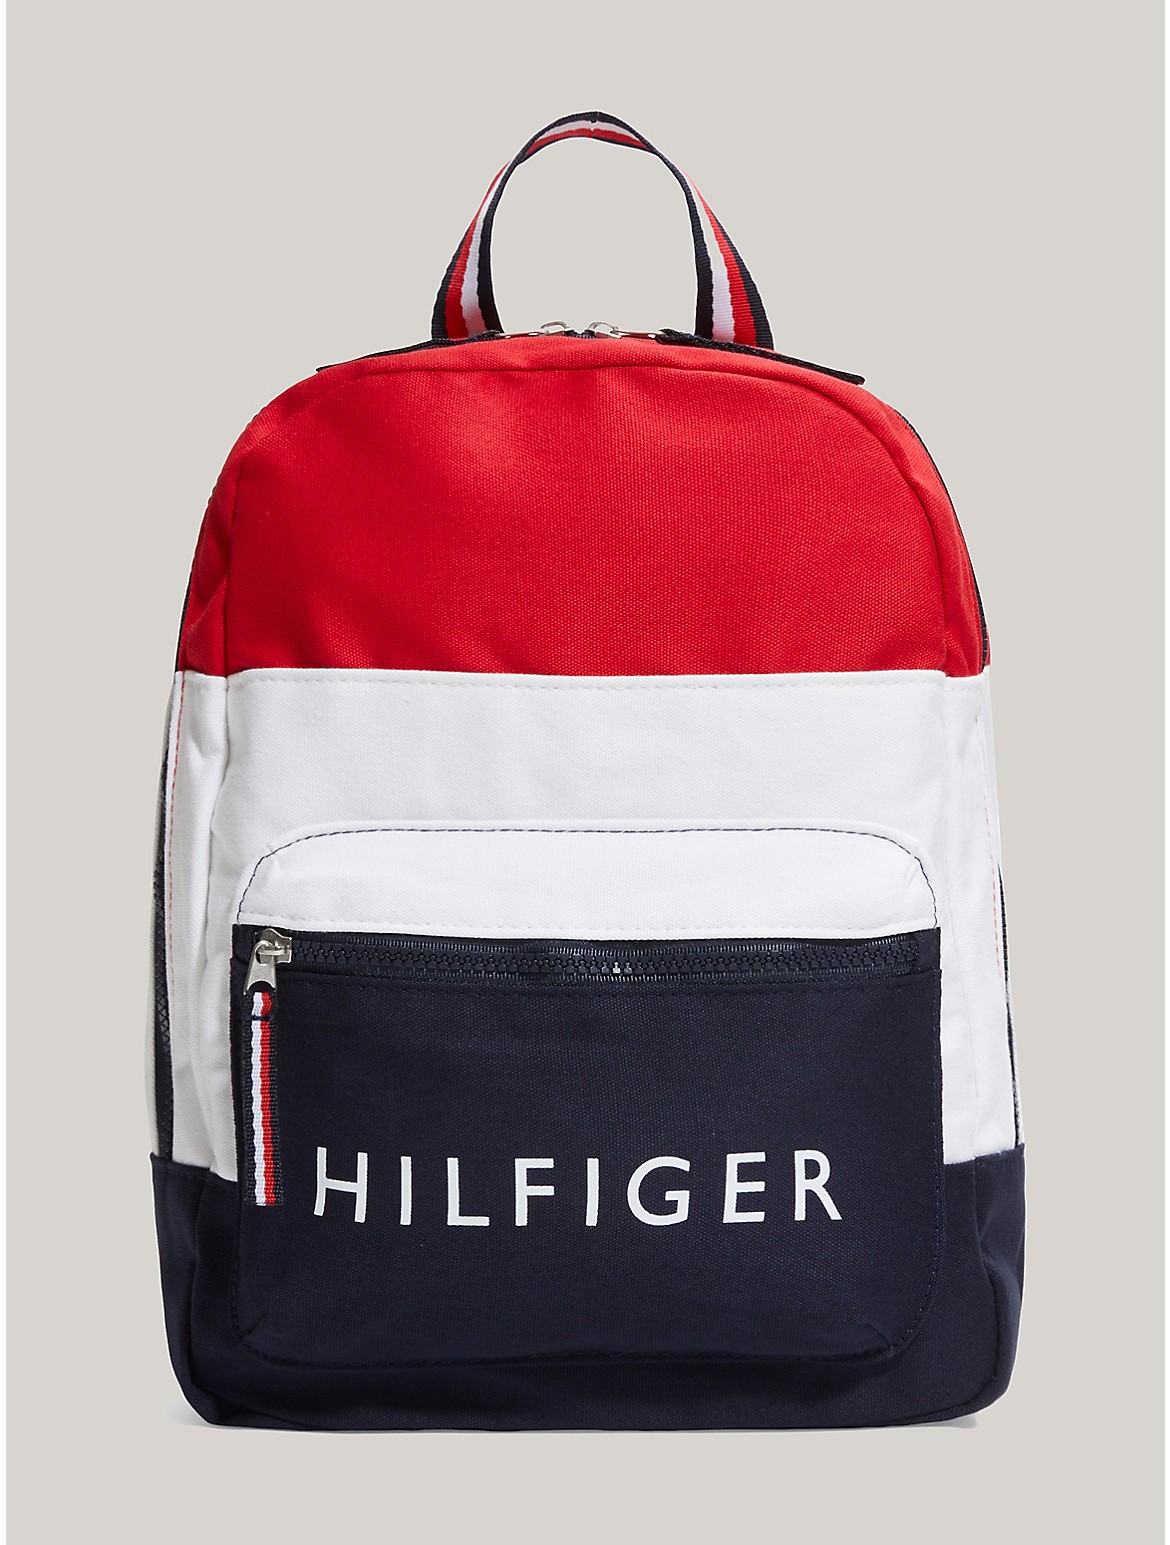 Tommy Hilfiger Kids' Hilfiger Logo Colorblock Backpack - Multi